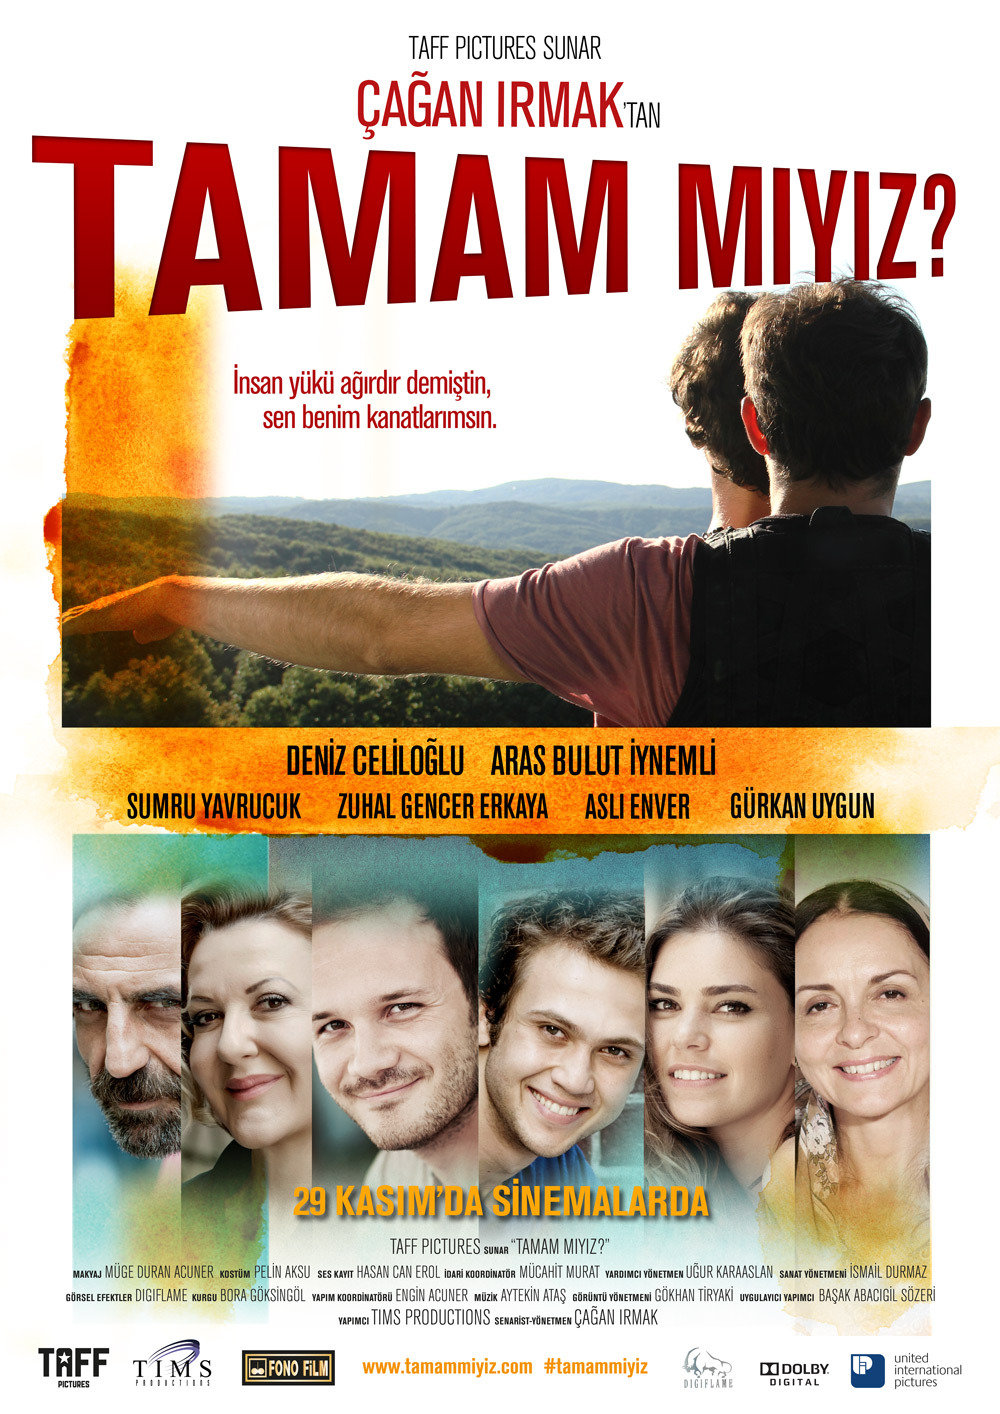 Zuhal Gencer, Timur Savci, Gürkan Uygun, Asli Enver, Deniz Celiloglu and Aras Bulut Iynemli in Tamam miyiz? (2013)